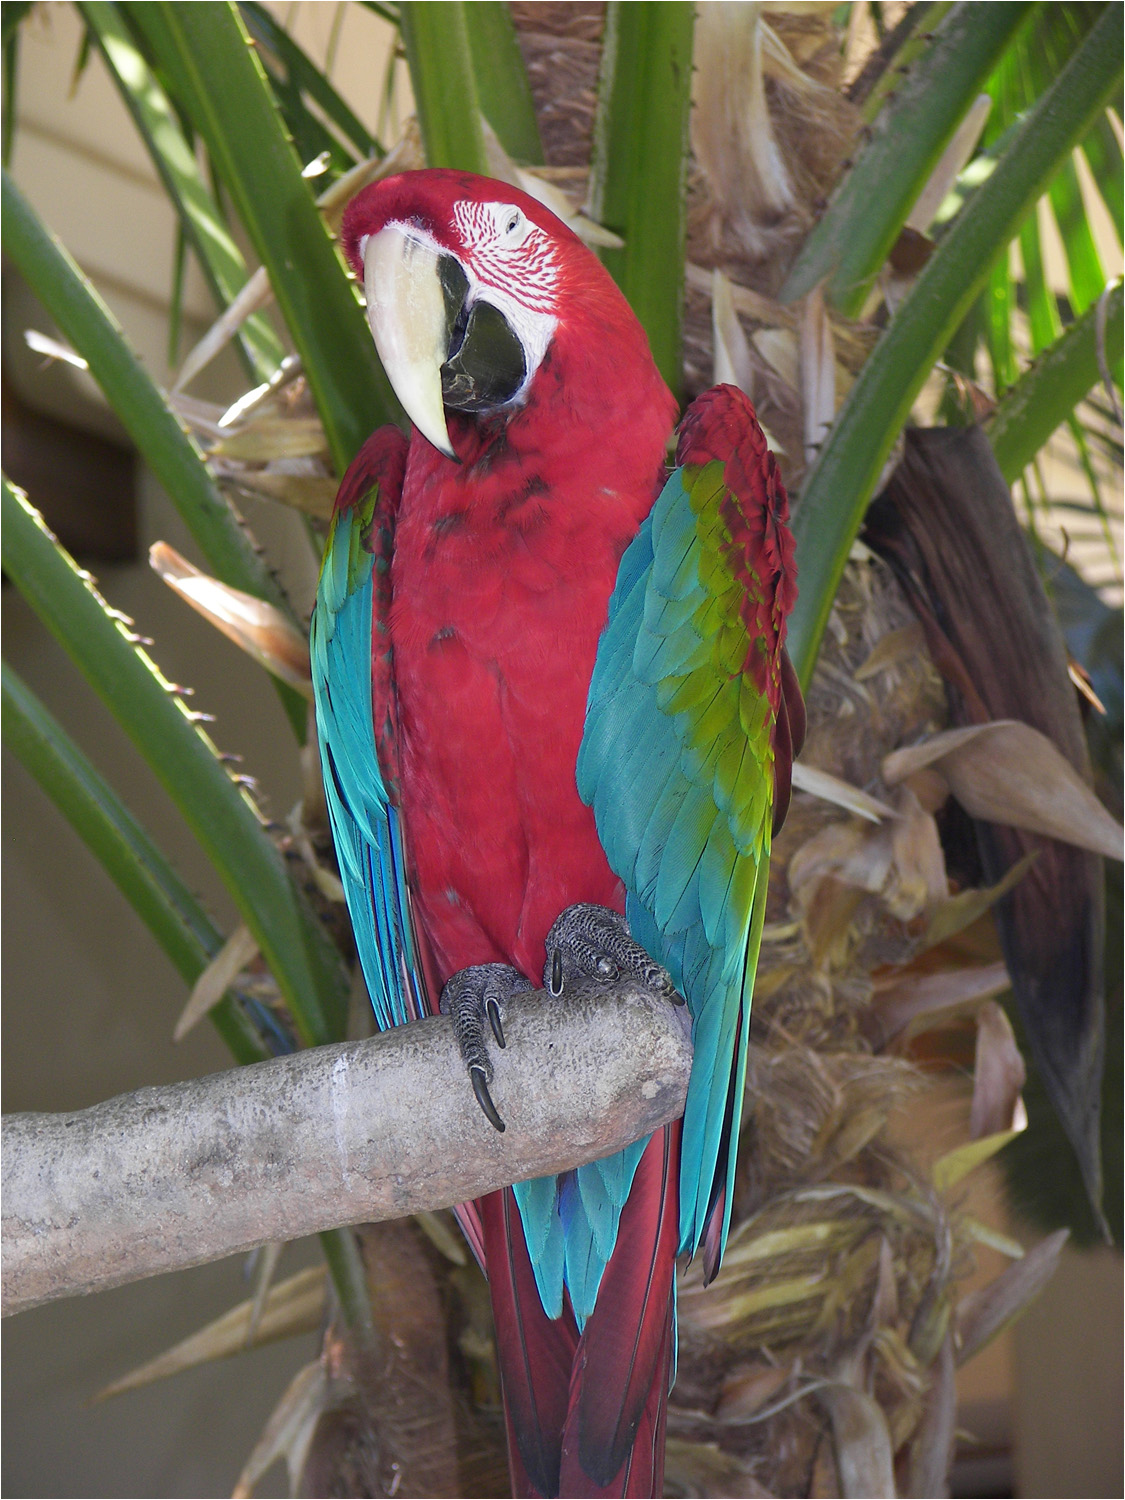 One of the Hyatt parrots